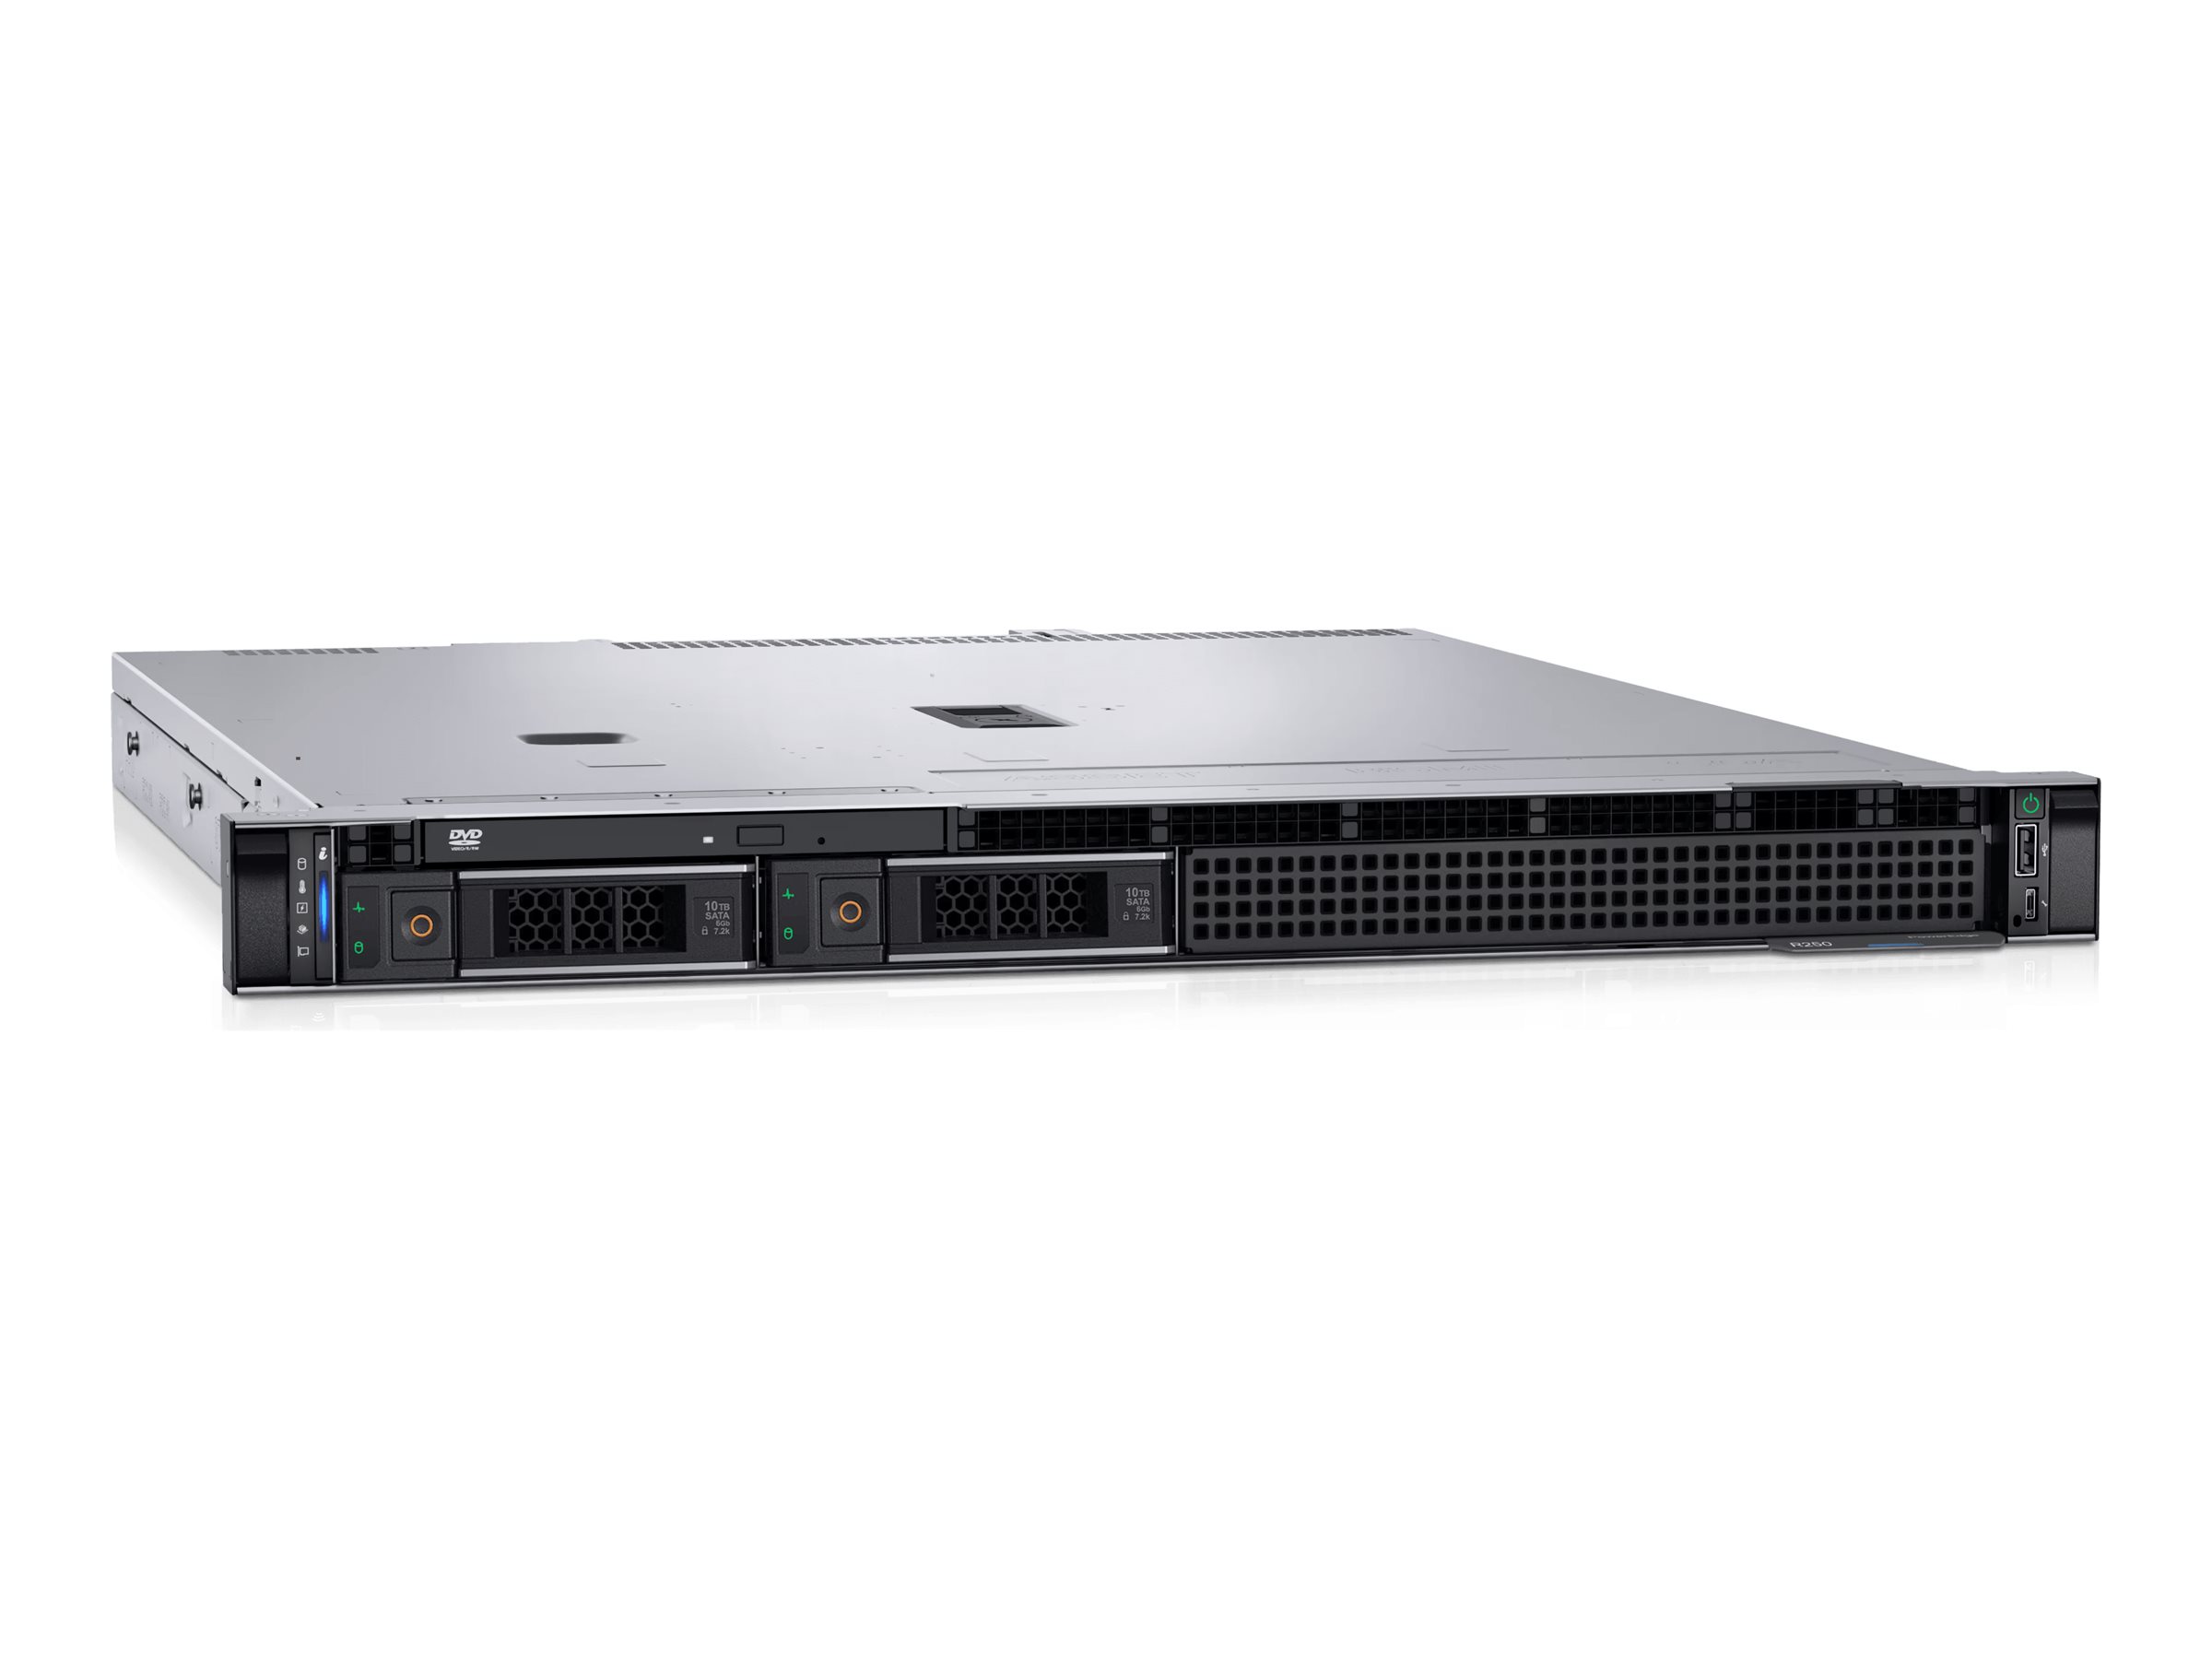 Dell PowerEdge R250 - Serveur - Montable sur rack - 1U - 1 voie - 1 x Xeon E-2314 / jusqu'à 4.5 GHz - RAM 8 Go - SATA - hot-swap 3.5" baie(s) - HDD 2 To - Matrox G200 - Gigabit Ethernet - Aucun SE fourni - moniteur : aucun - noir - BTP - Dell Smart Selection, Dell Smart Value - avec 3 ans de support de base avec service sur place le jour ouvrable suivant - C41G2 - Serveurs rack